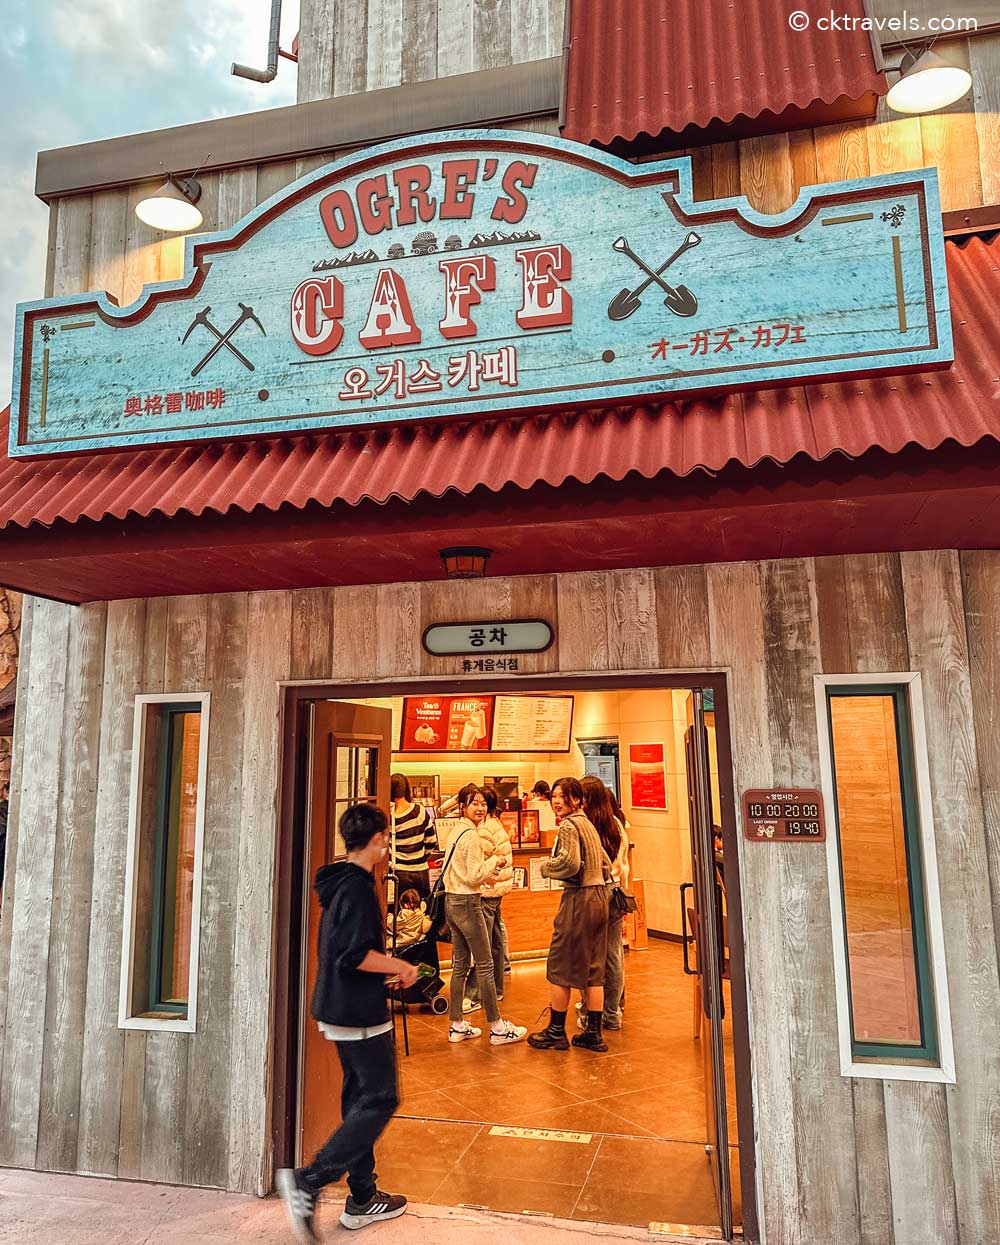 Ogre's cafe at Lotte World Busan